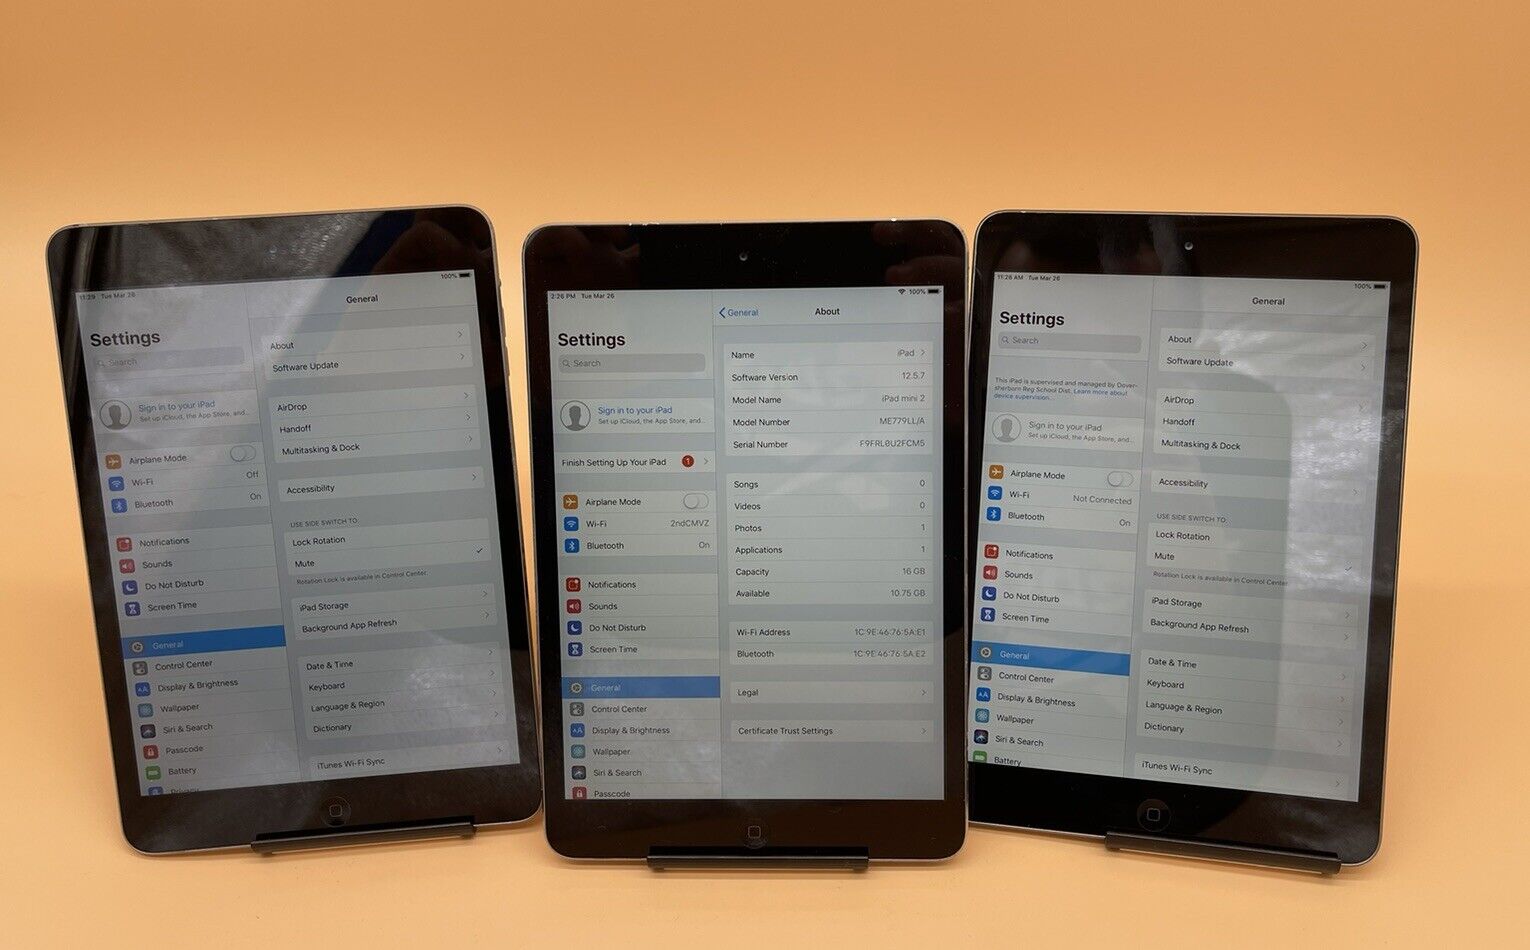 Lot of 3 Apple iPad mini 2 16GB, Wi-Fi, 7.9in - Space Gray A1489